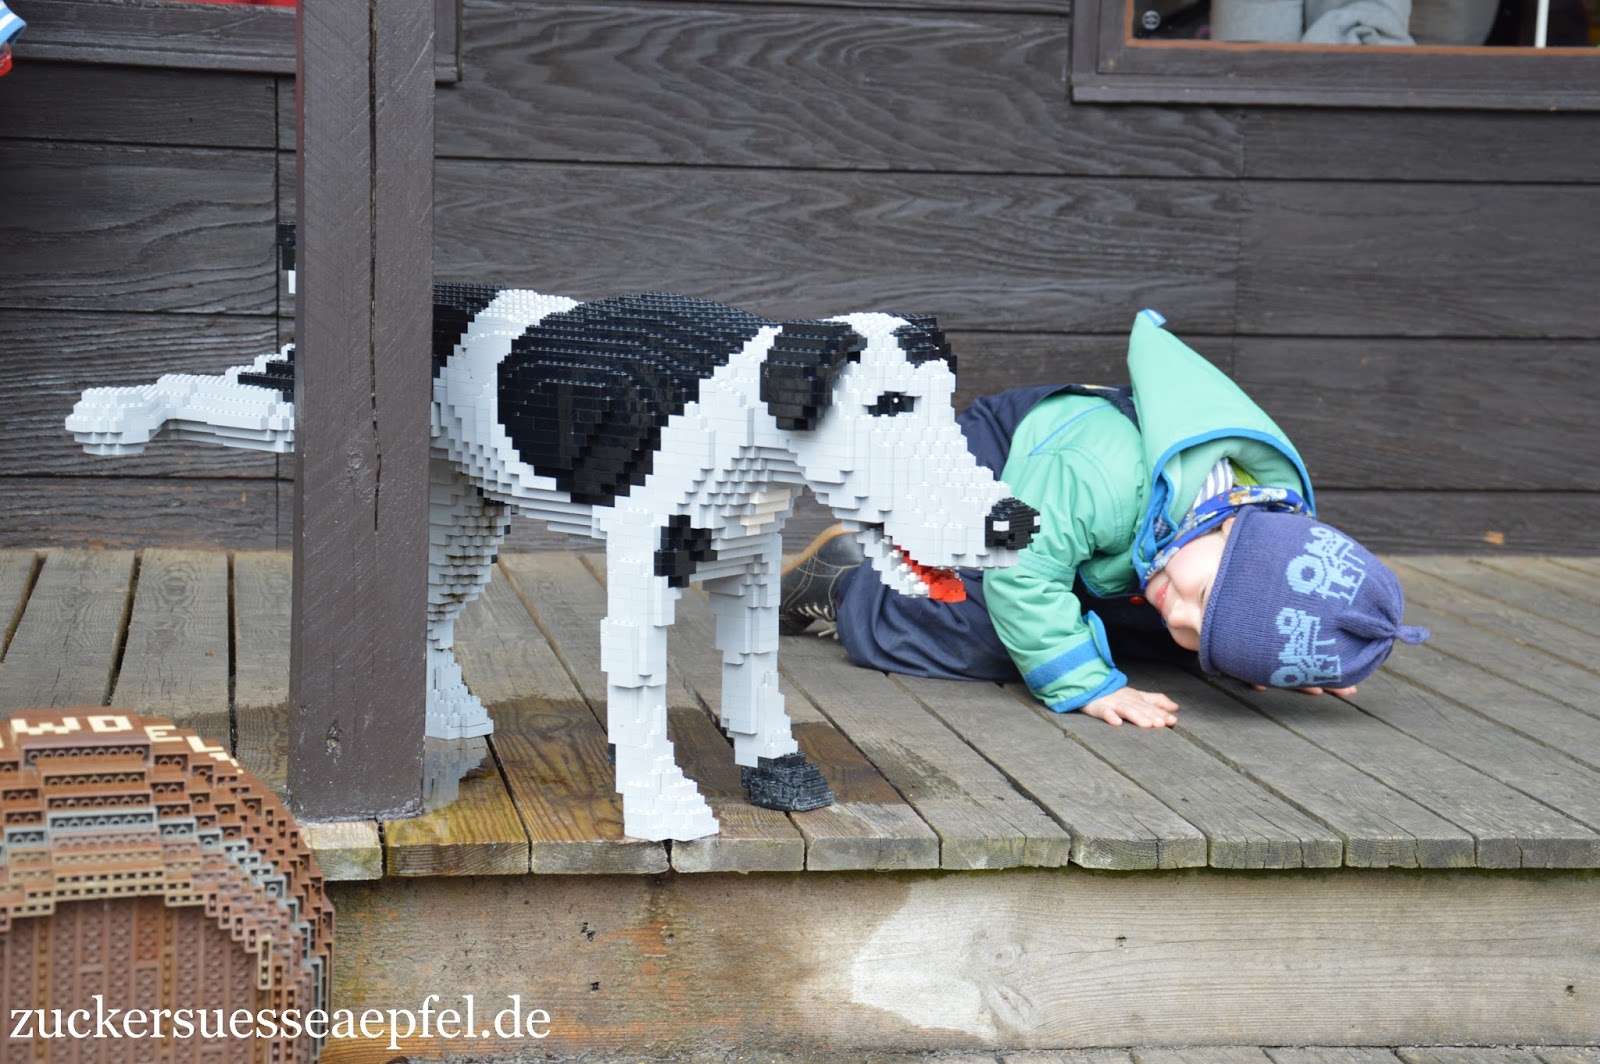 Unser aufregender Tag im Legoland Billund in Dänemark | ♥ Zuckersüße Äpfel kreativer Familienblog und Reiseblog